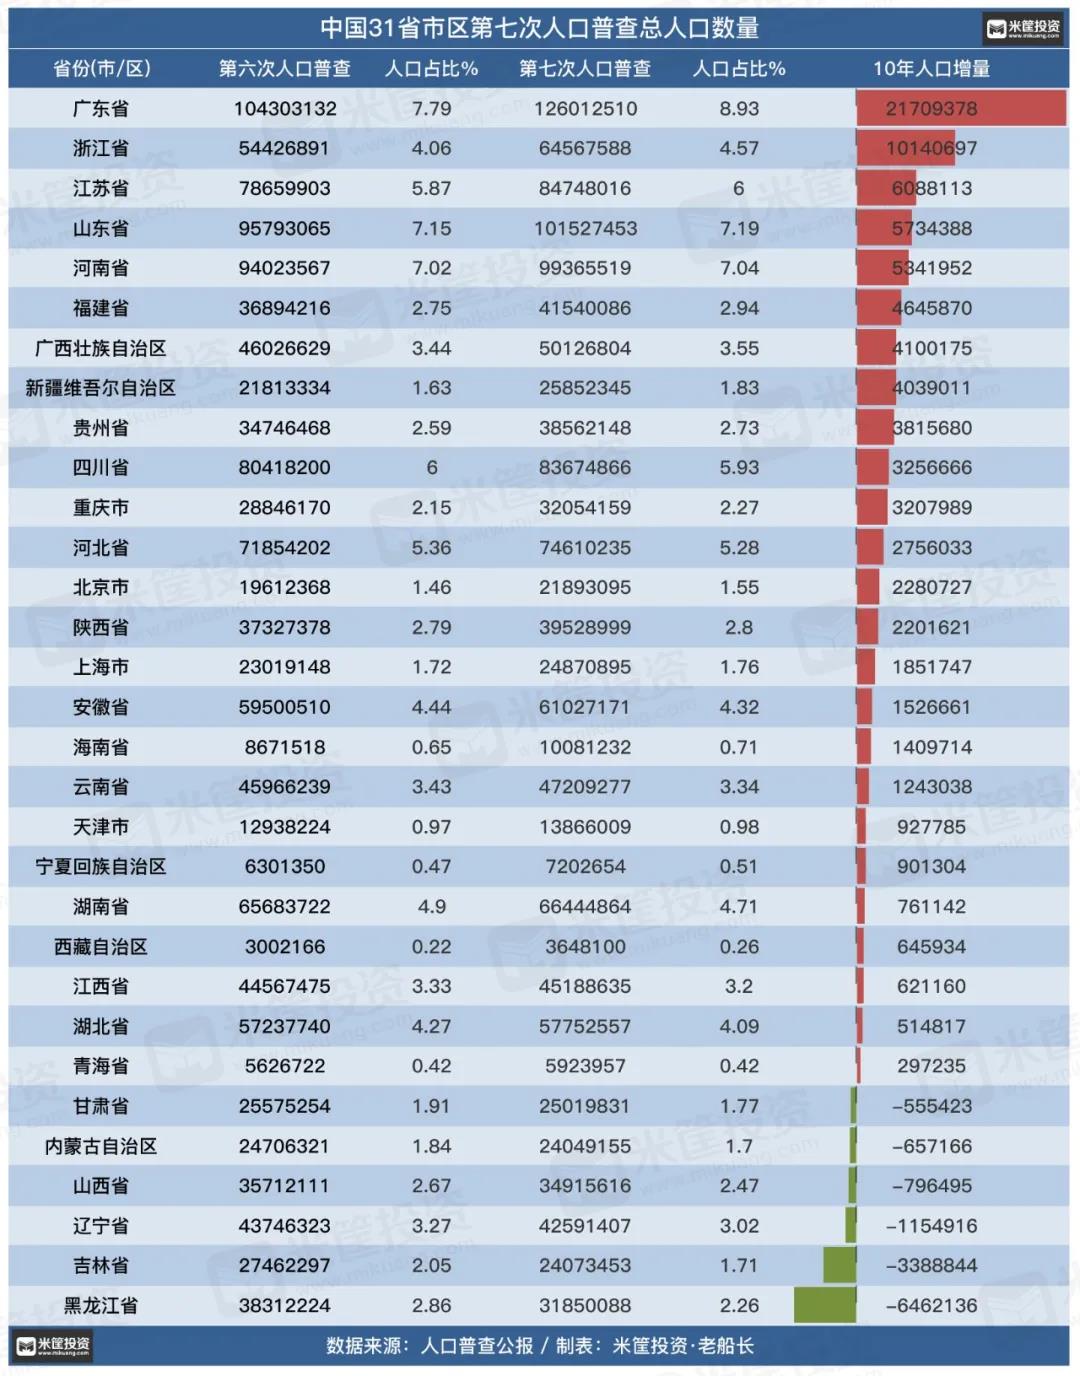 2021年中国31省市人口数量增量排行榜(最新统计)